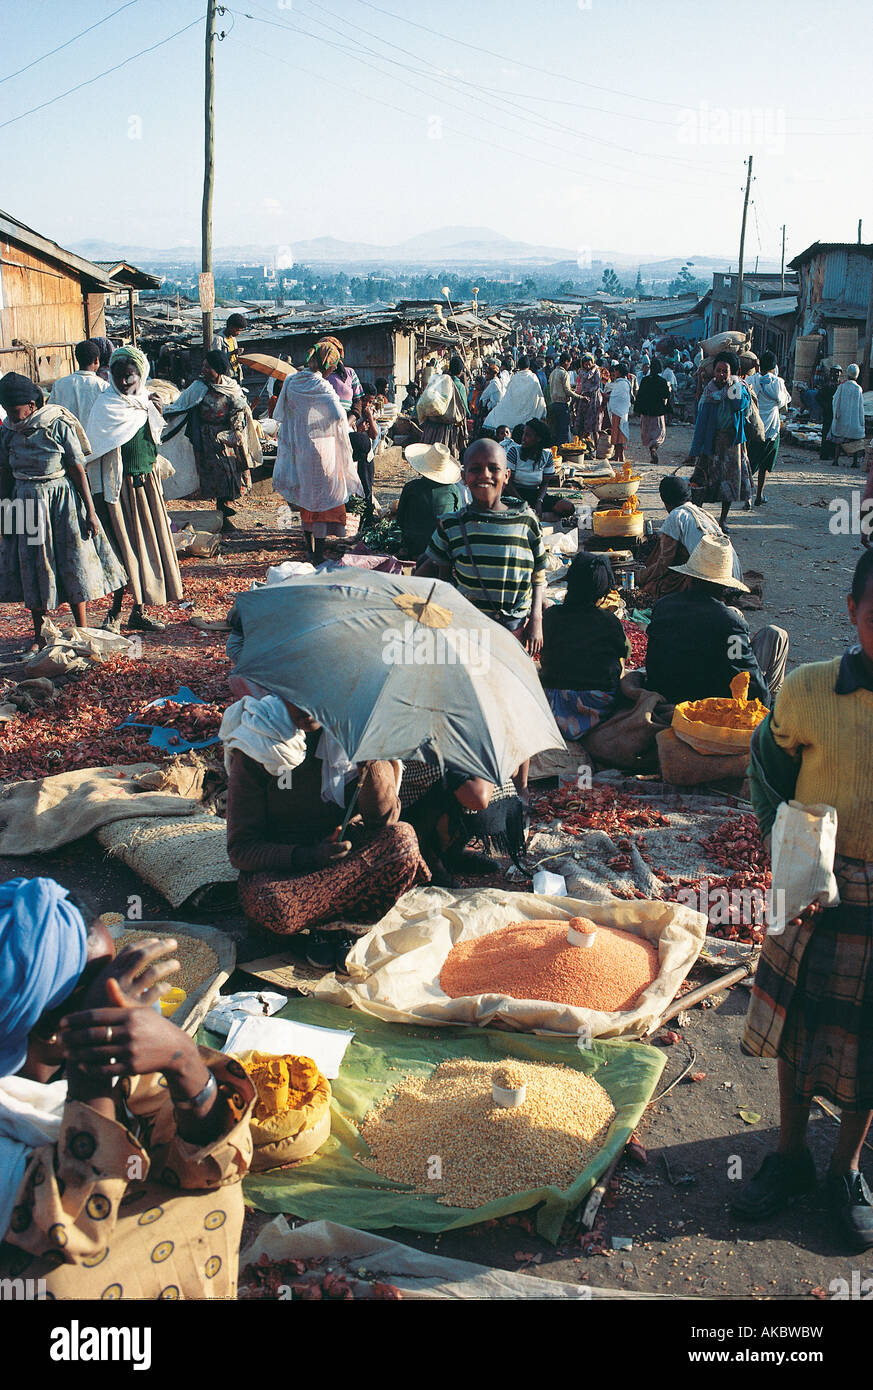 Einen belebten lokalen Outdoor-Markt in Addis Abeba Äthiopien Stockfoto